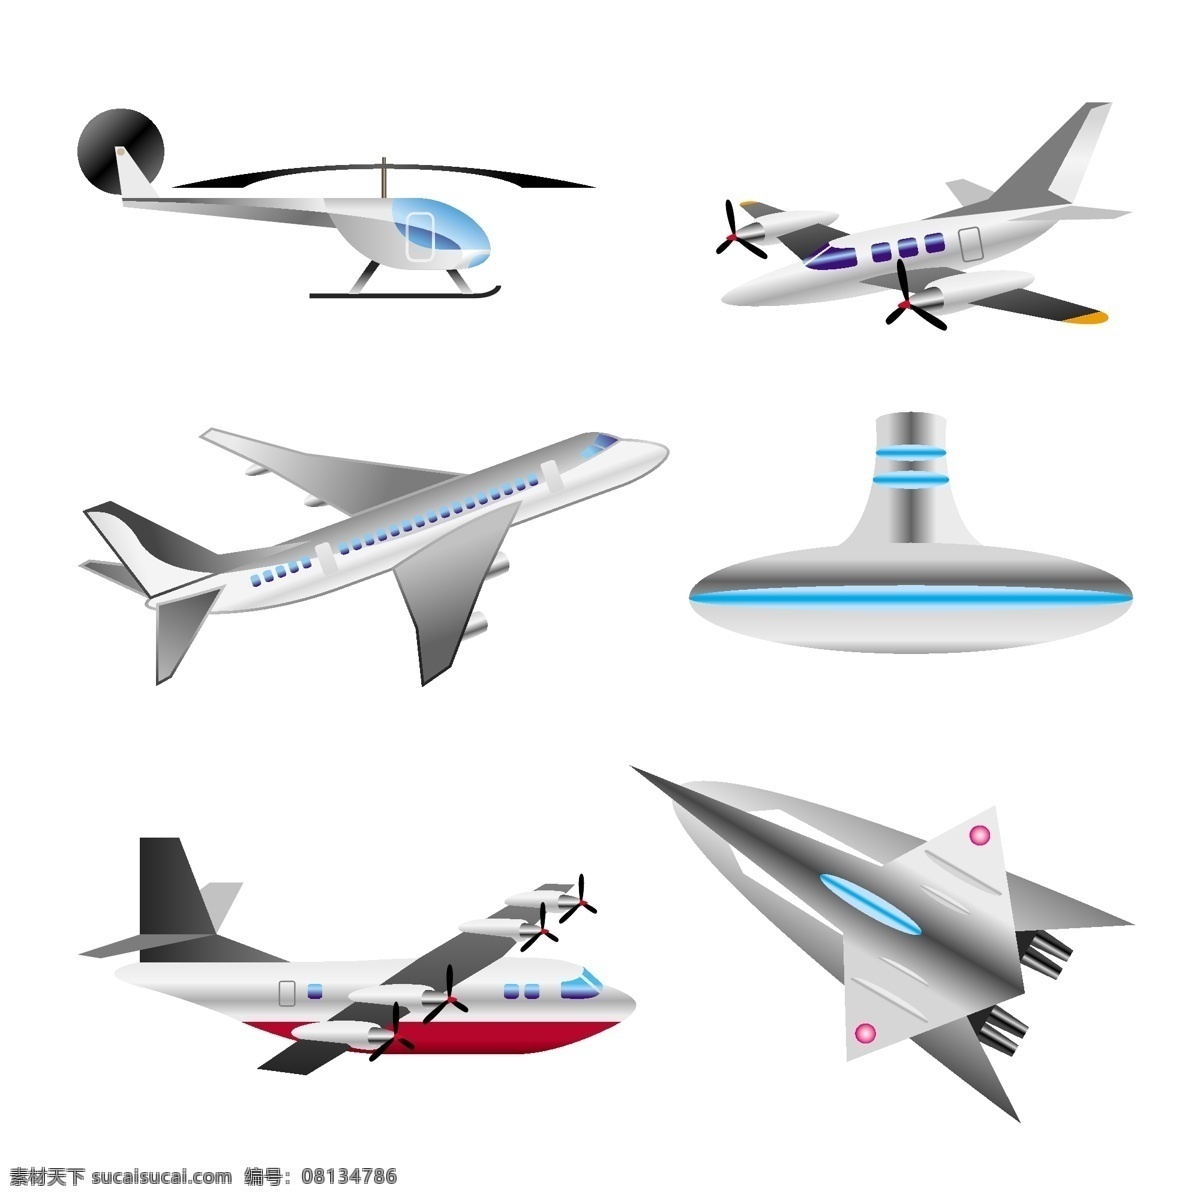 精美 各种 飞机 矢量 飞碟 交通工具 矢量素材 直升飞机 直升机 喷射机 矢量图 其他矢量图